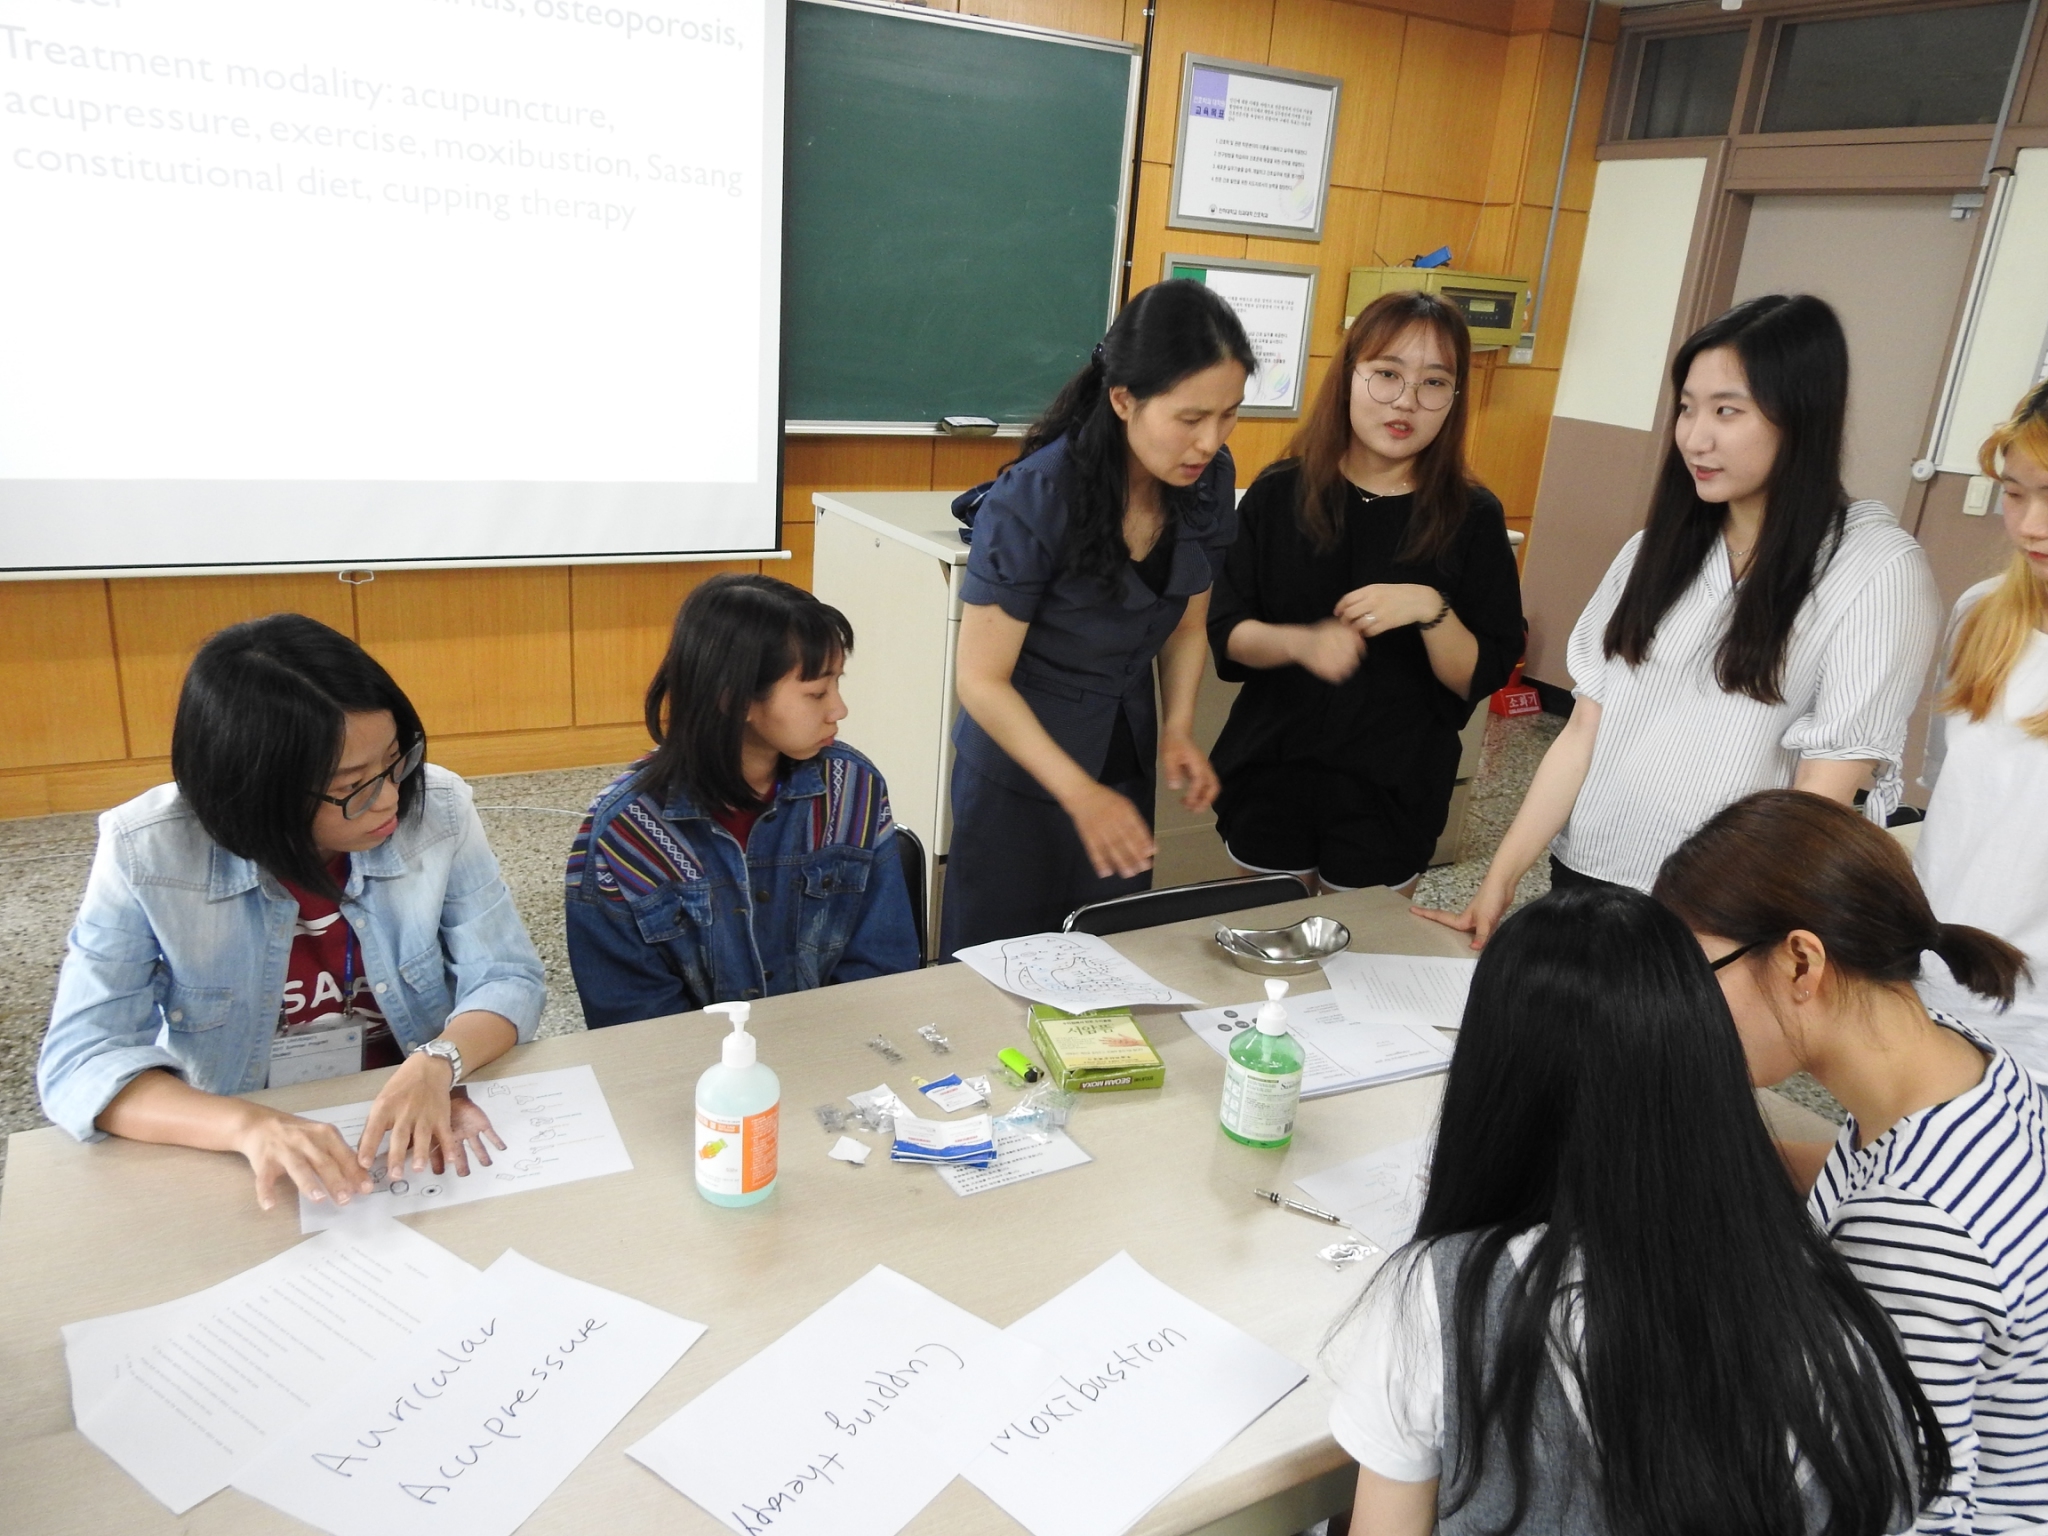 仁荷大學護理系教師Dr. Eun jin Lee講授「傳統醫學與護理」，兩校學生共同學習交流。